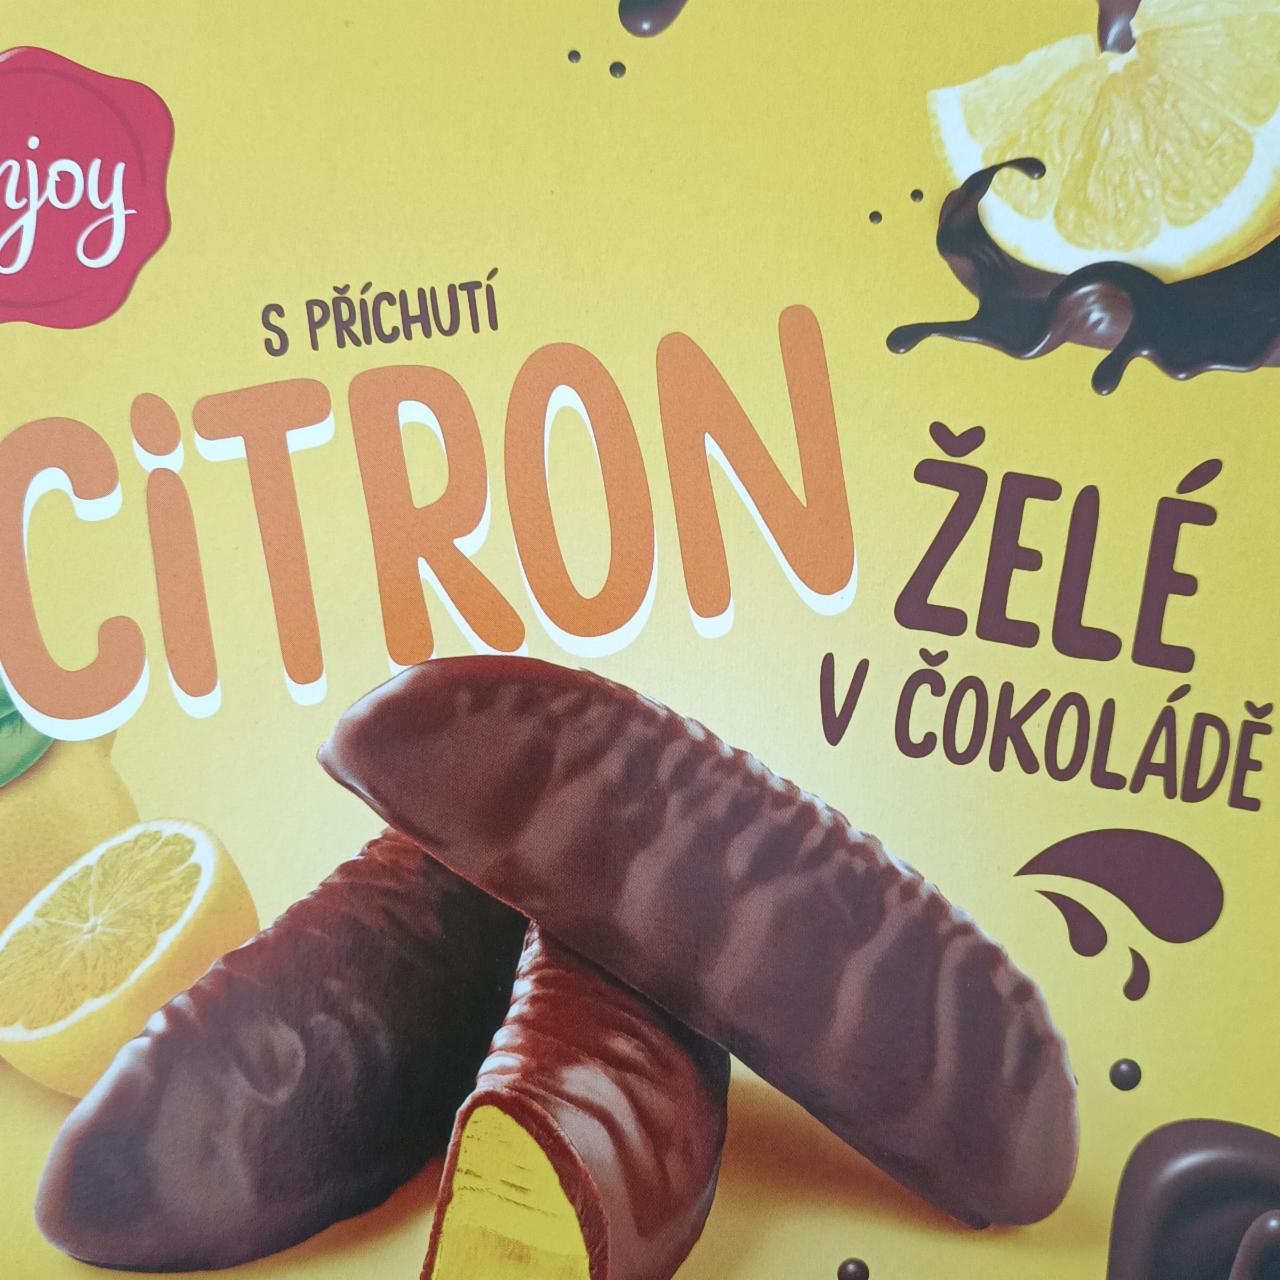 Fotografie - Želé v čokoládě s příchutí citron Enjoy